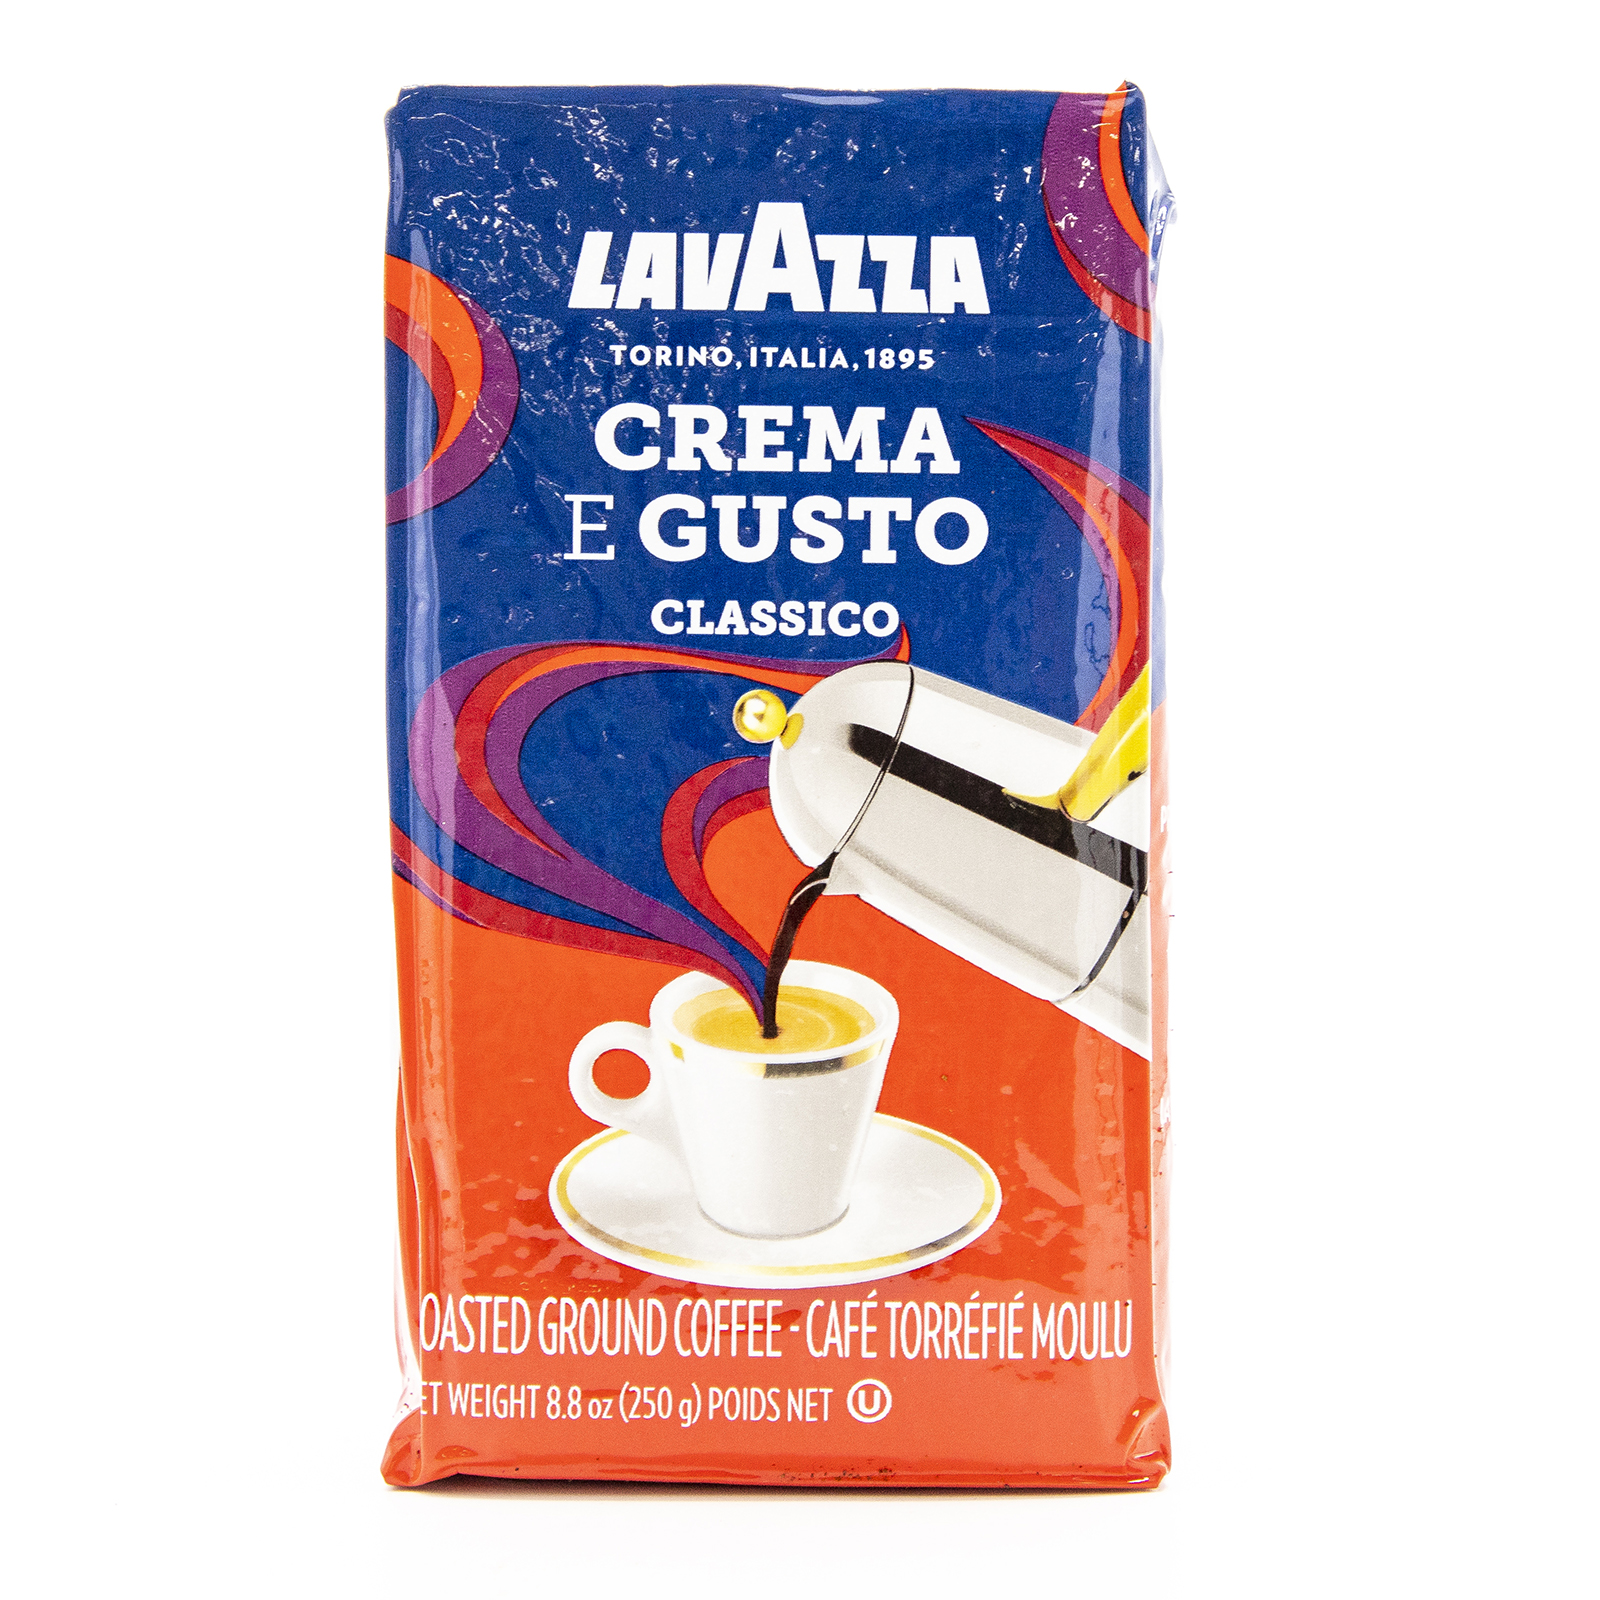 Lavazza Crema e Gusto Ground Coffee 8.8oz 885369371660